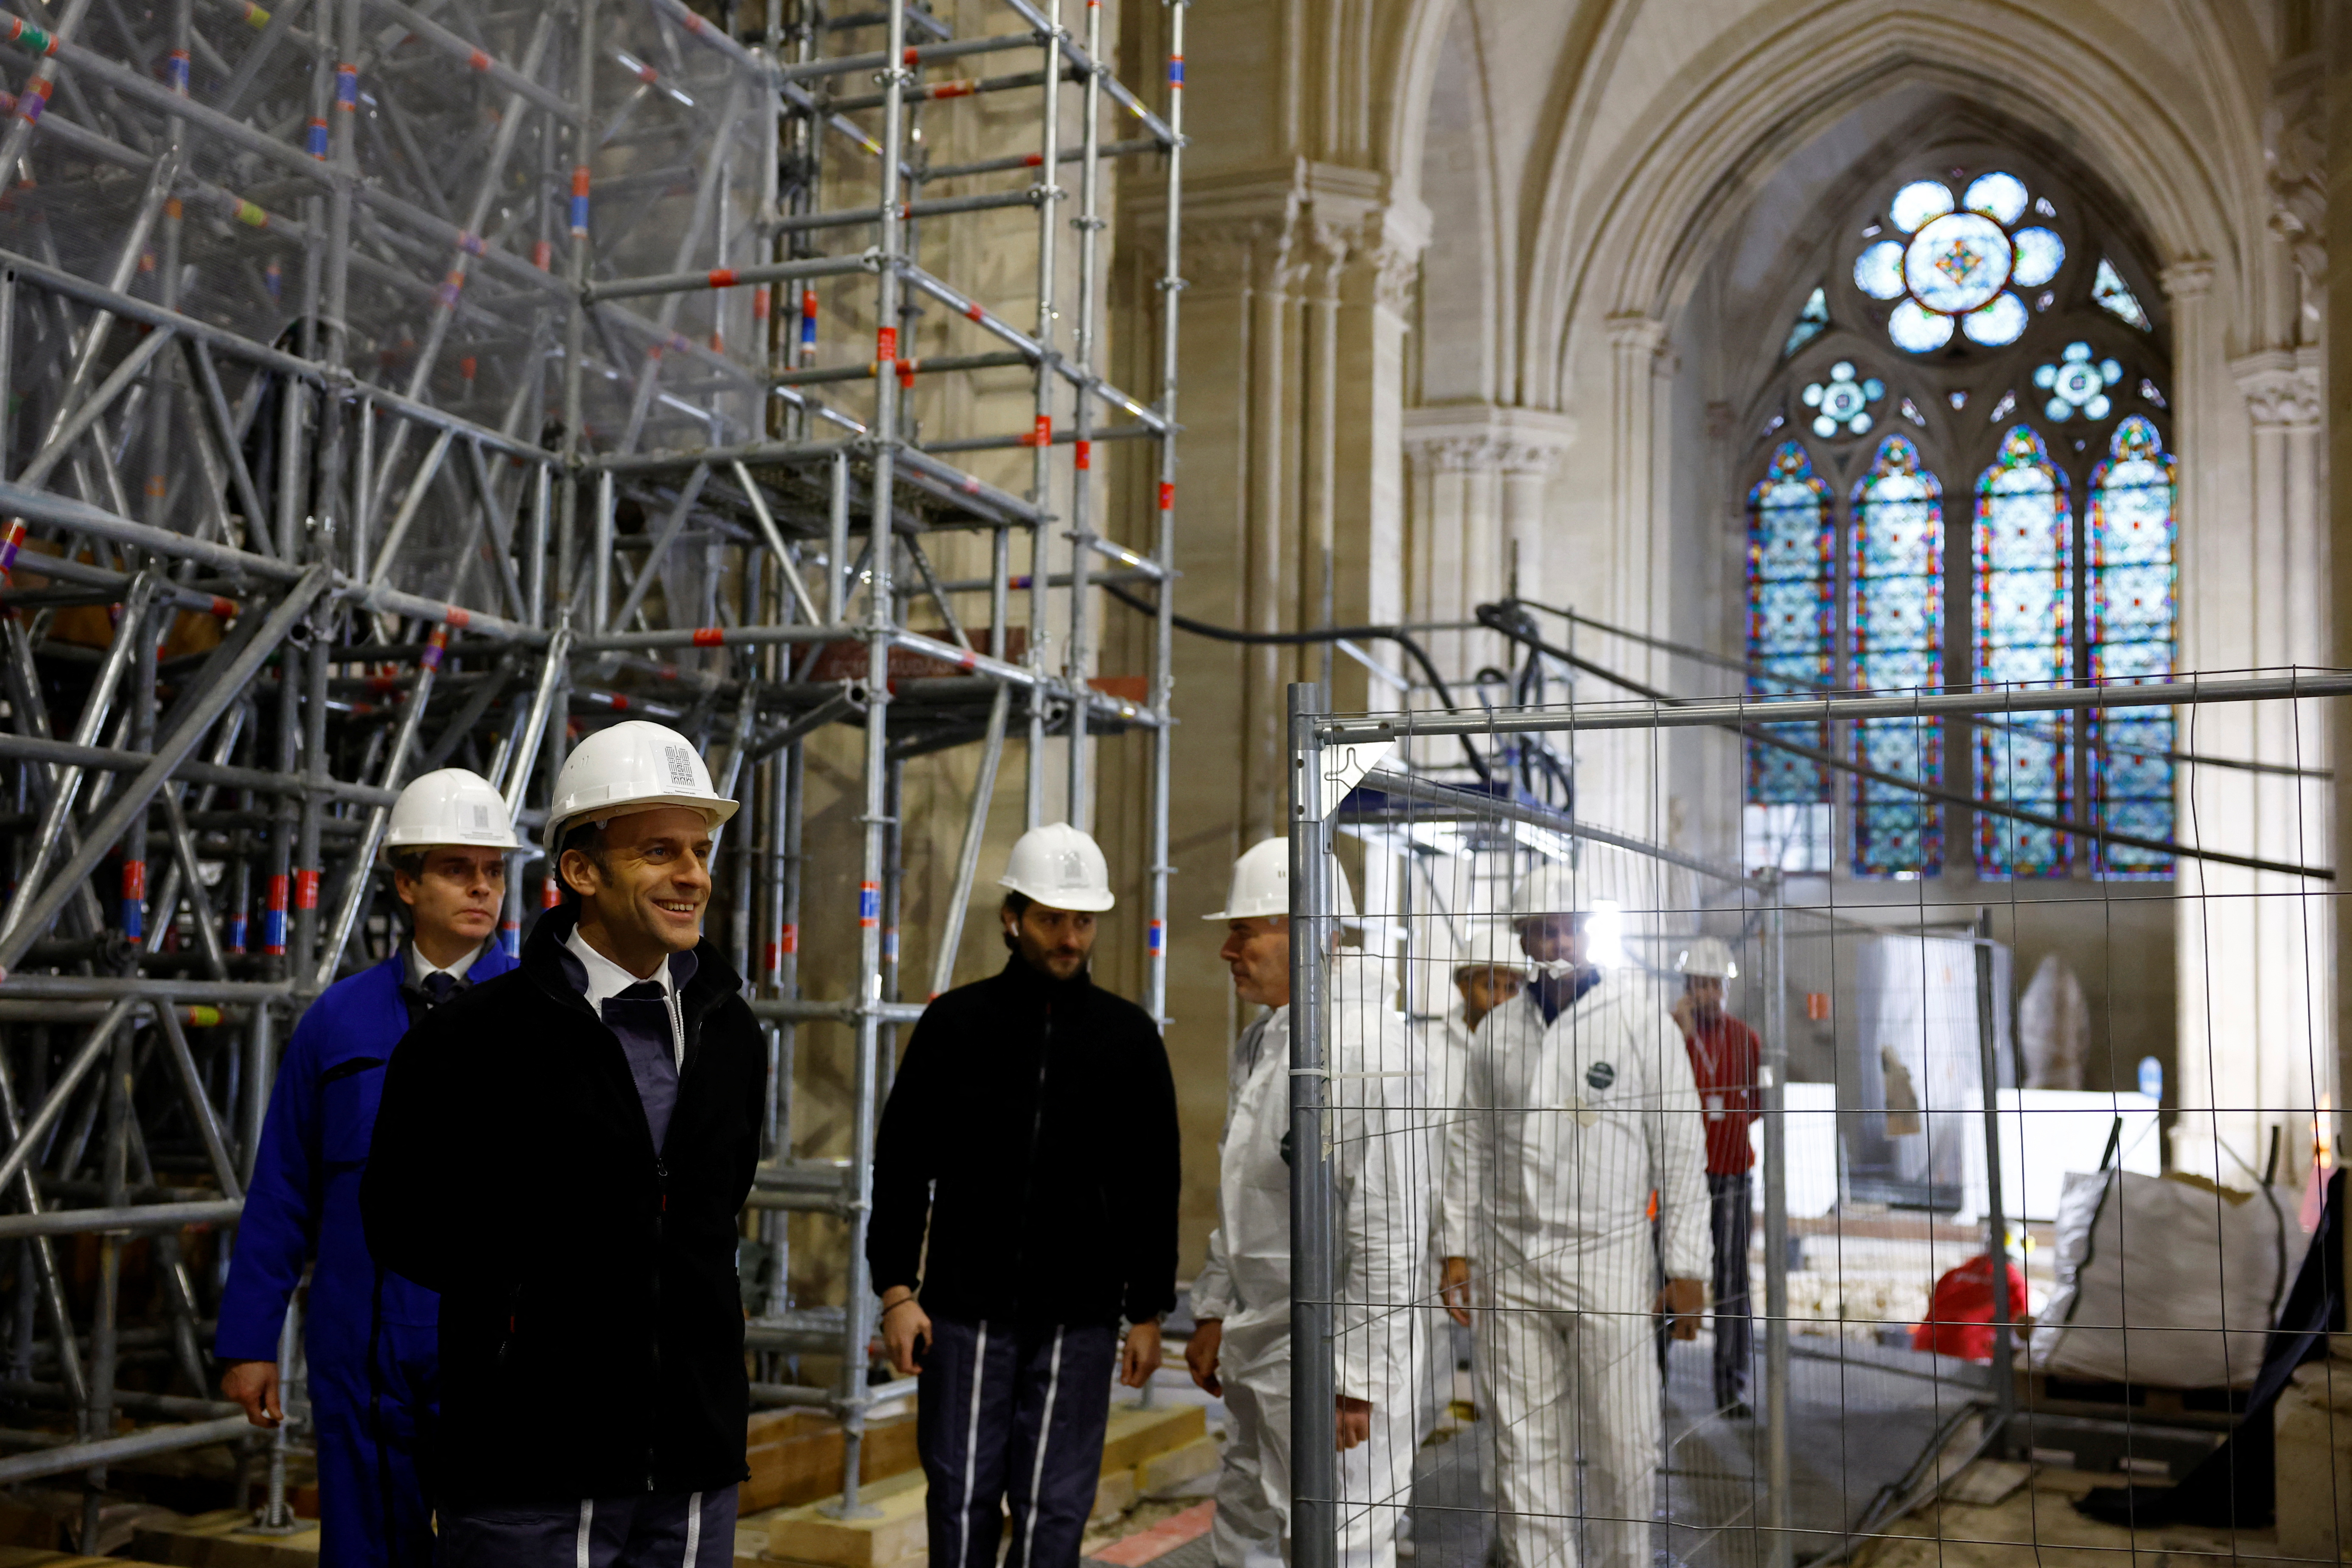 12월 8일, 마크롱 프랑스 대통령이 노트르담 대성당 복구 현장을 시찰하고 있다.